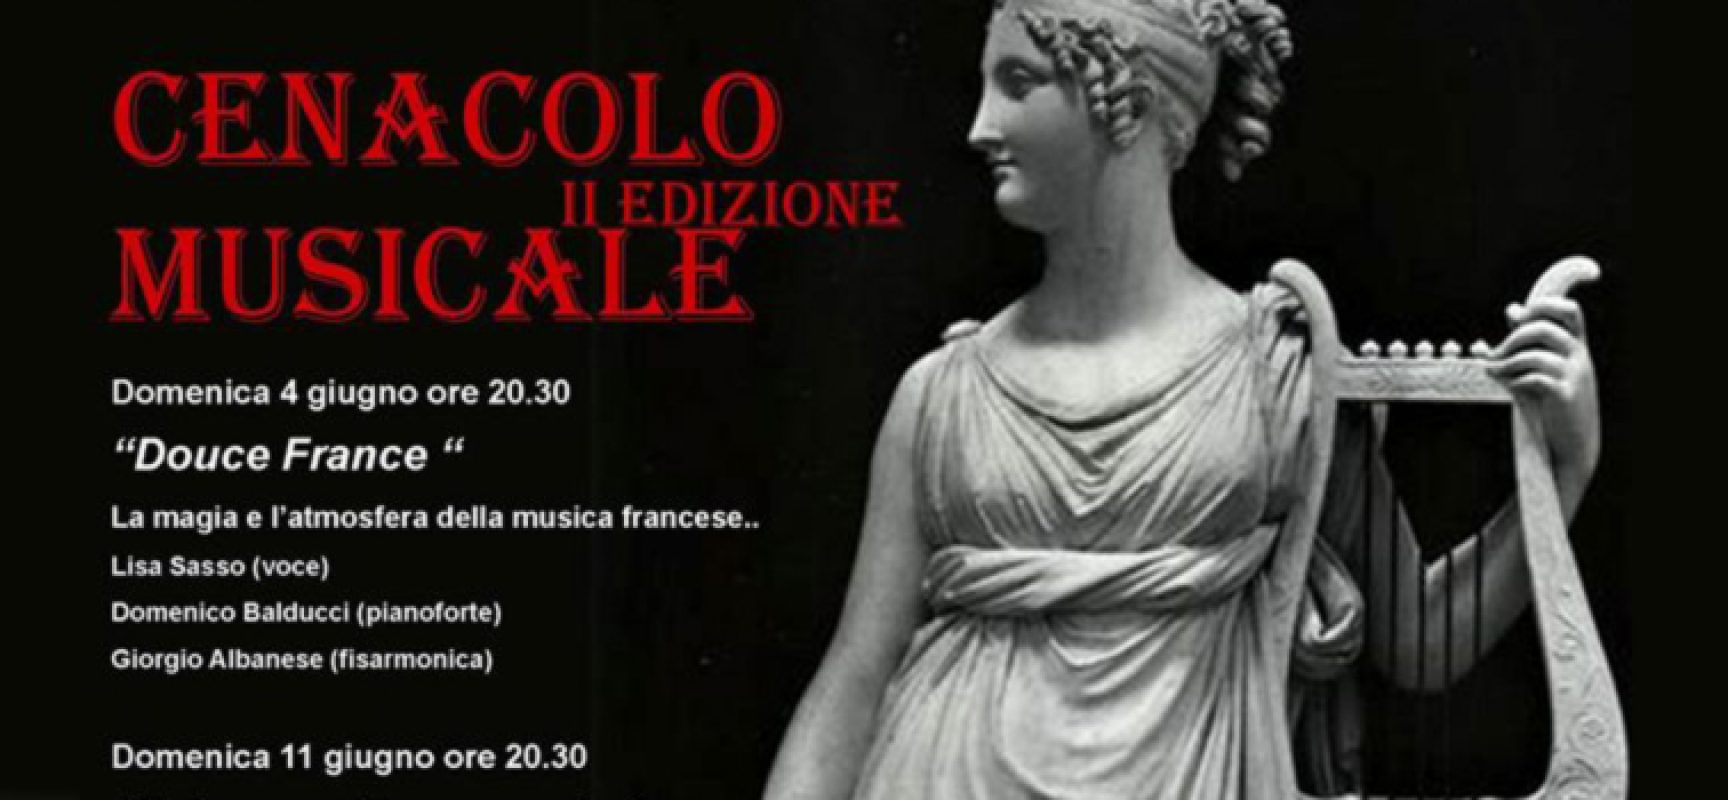 La Nuova Accademia Orfeo presenta la seconda edizione della rassegna “Cenacolo musicale”